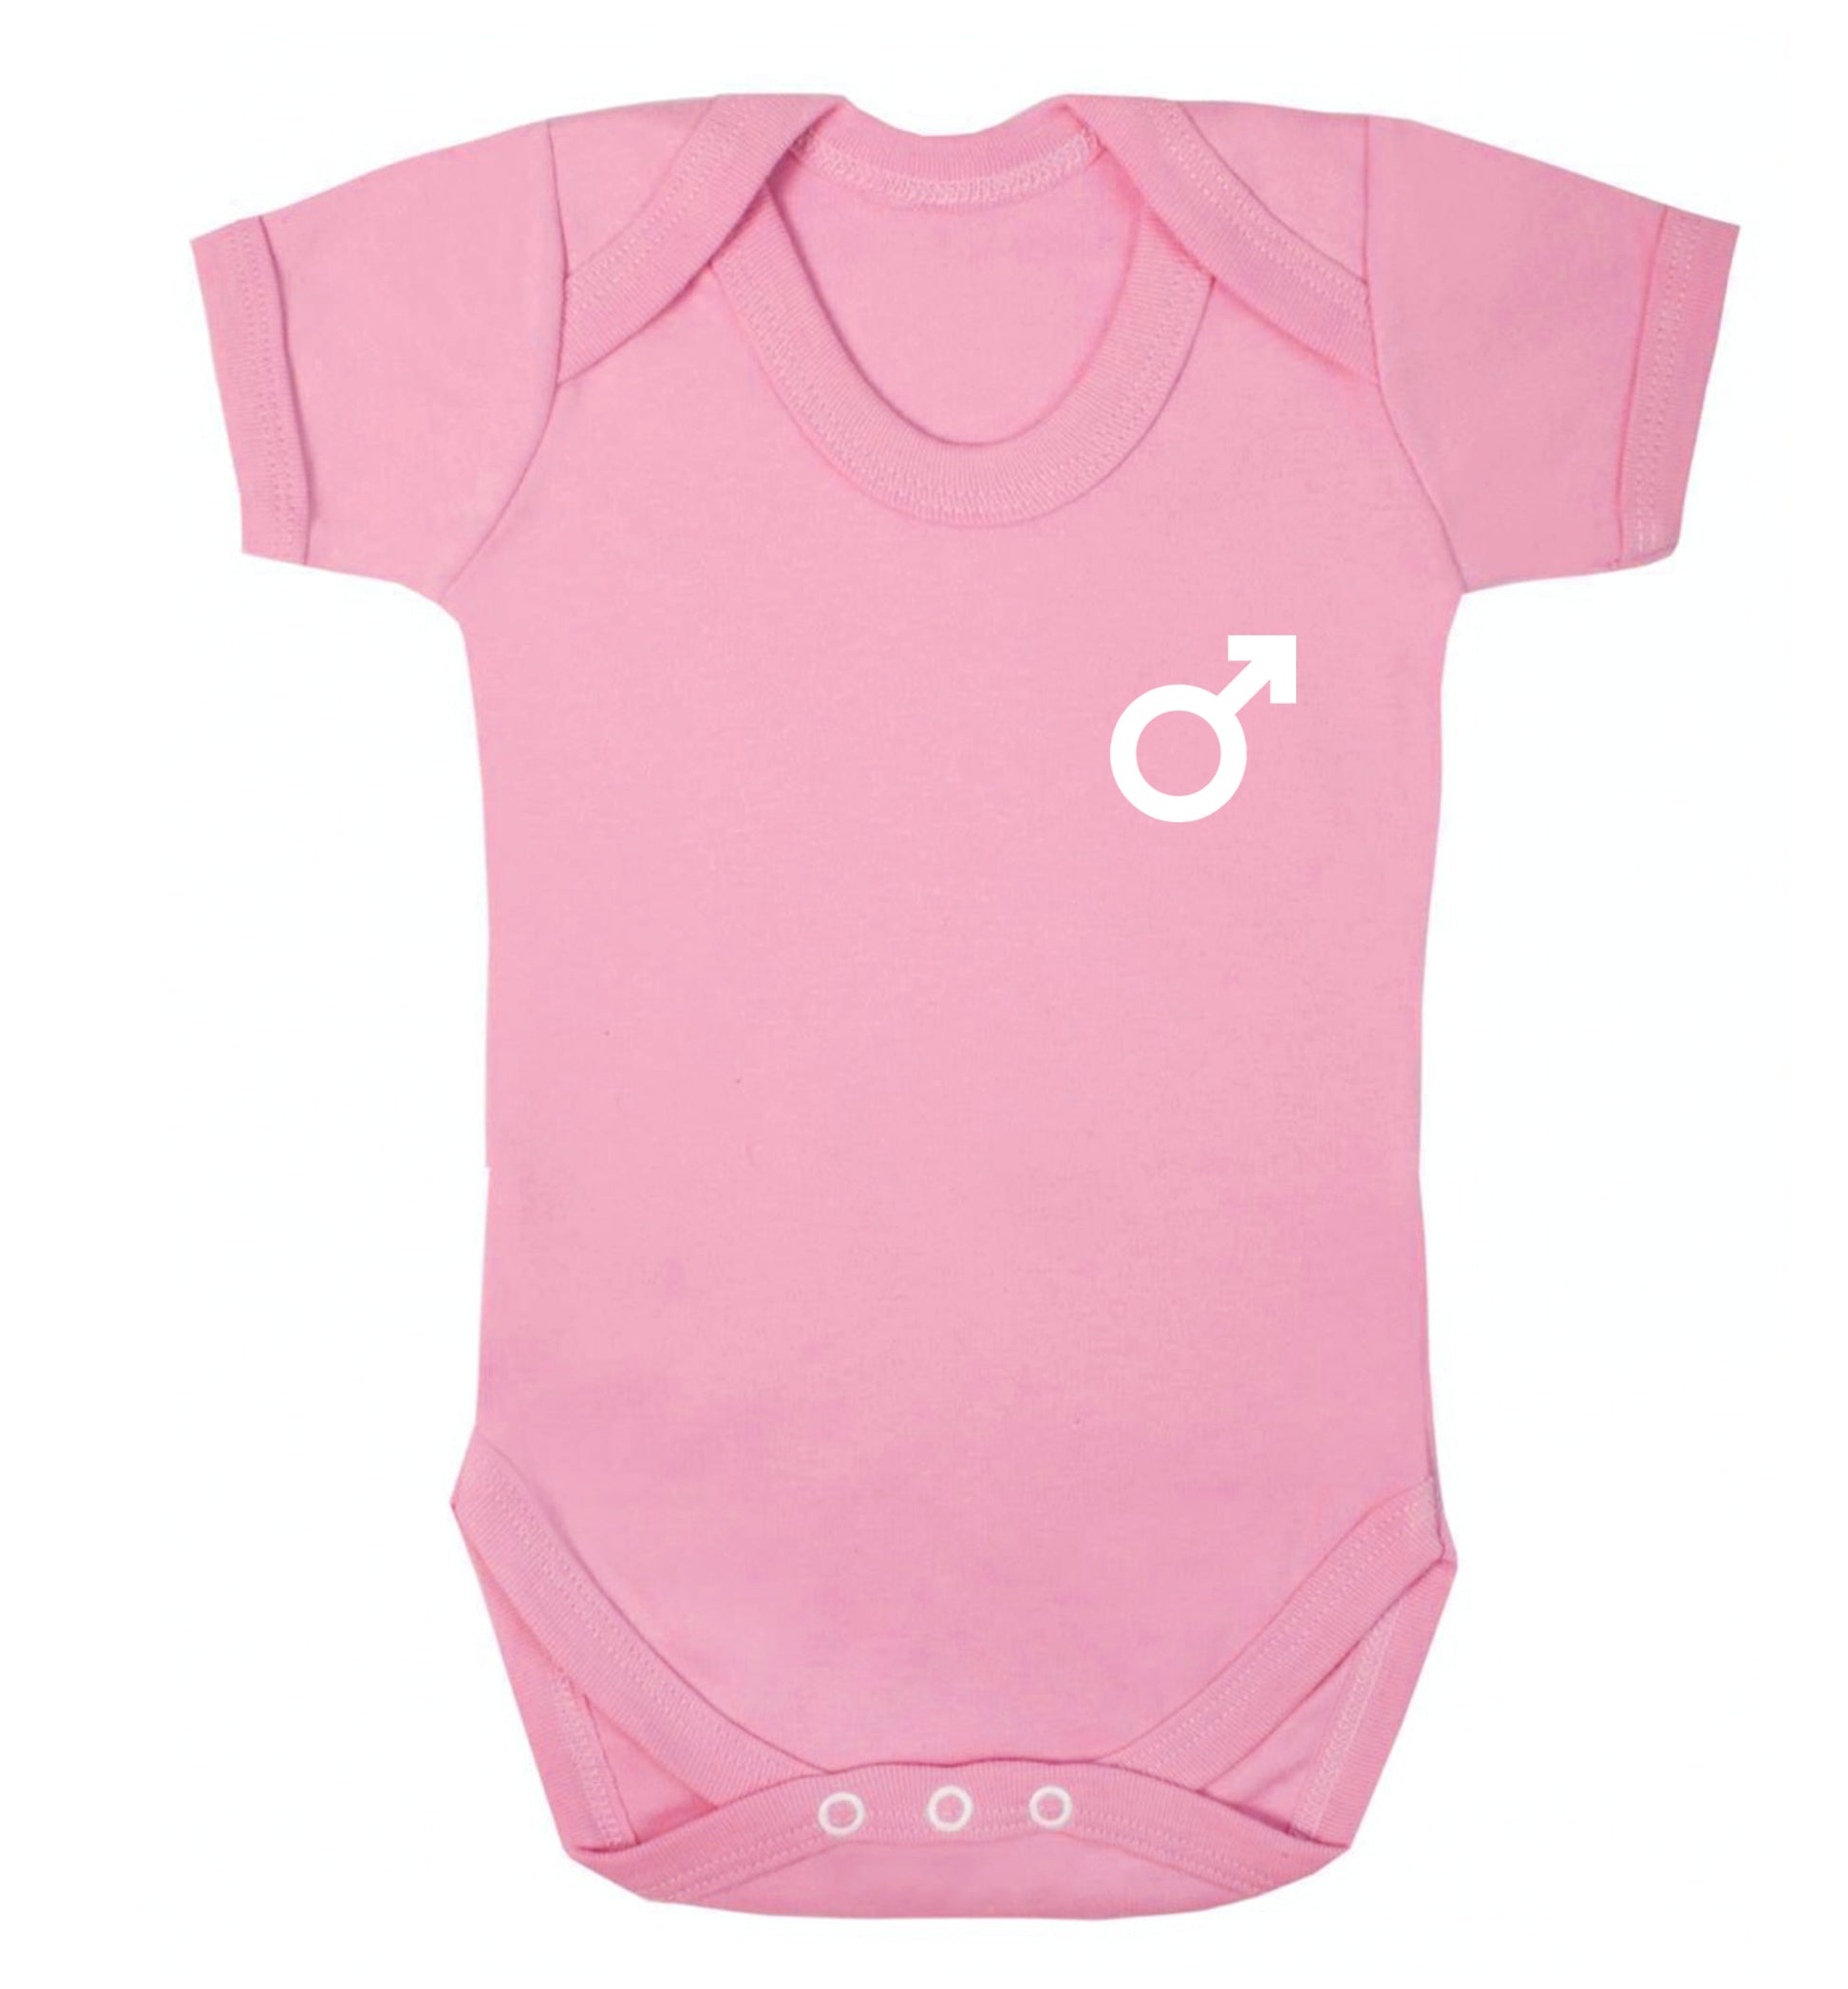 Male symbol pocket Baby Vest pale pink 18-24 months